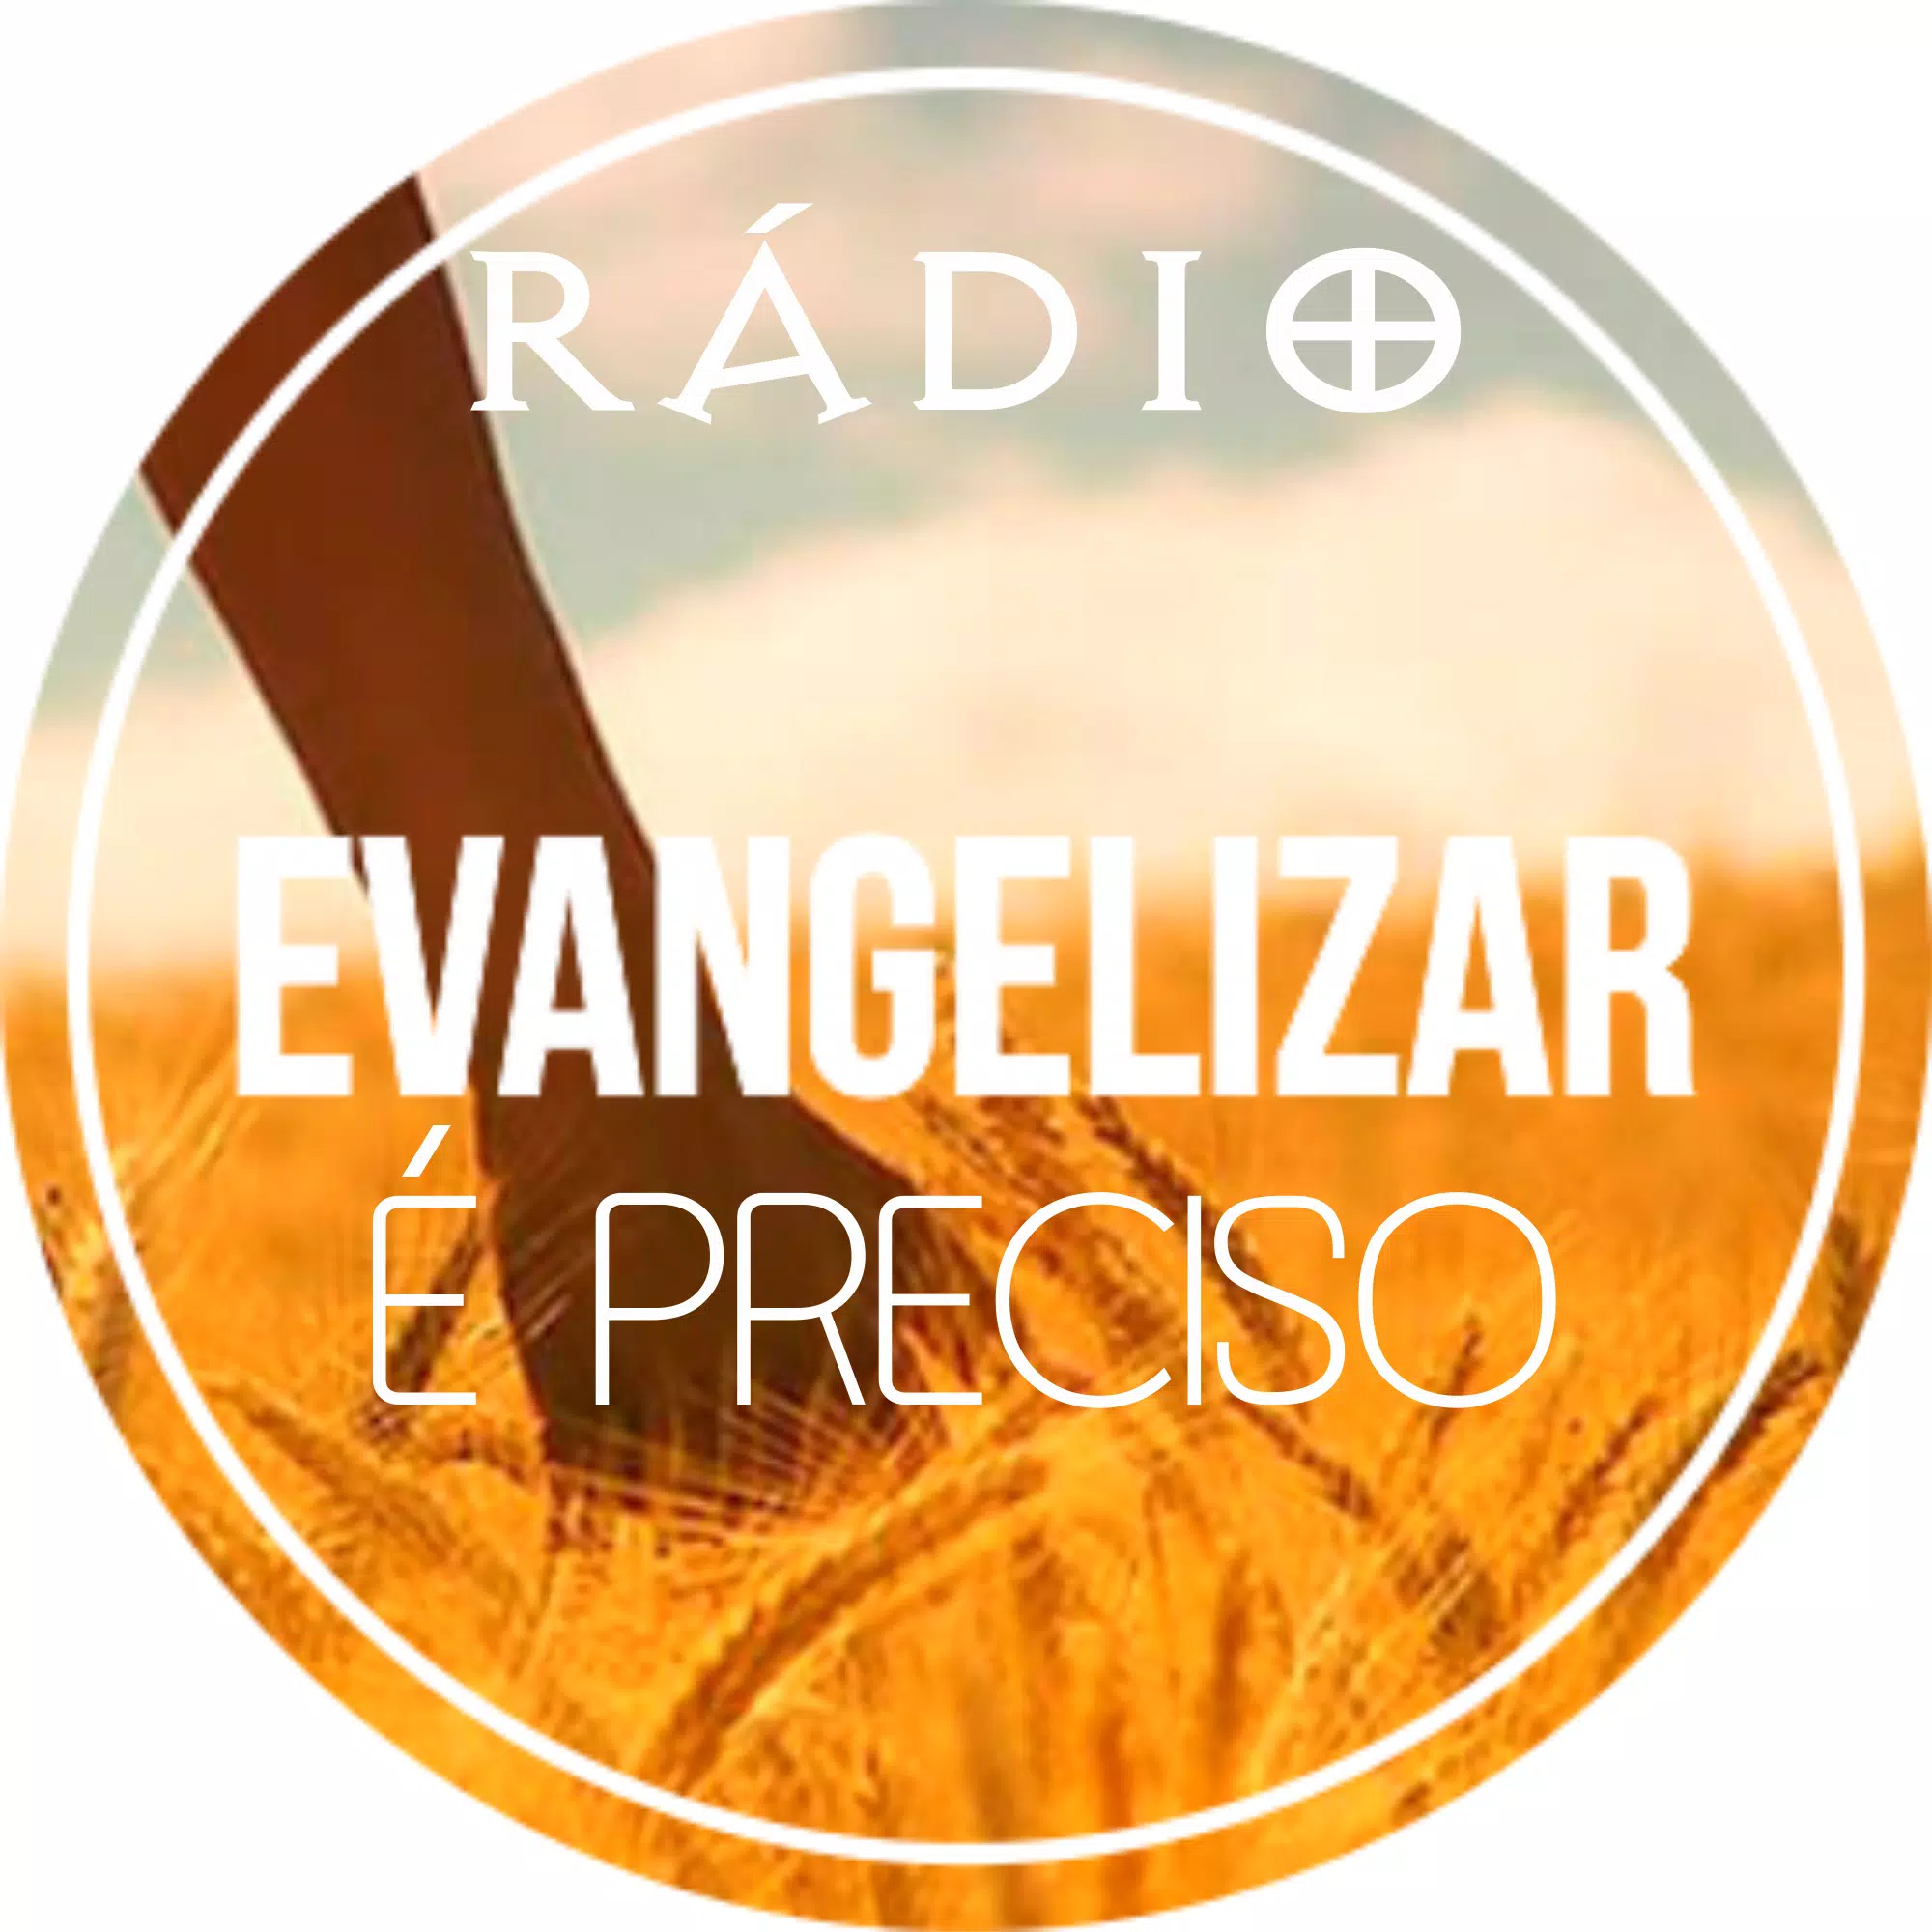 Rádio evangelizar é preciso for Android - APK Download